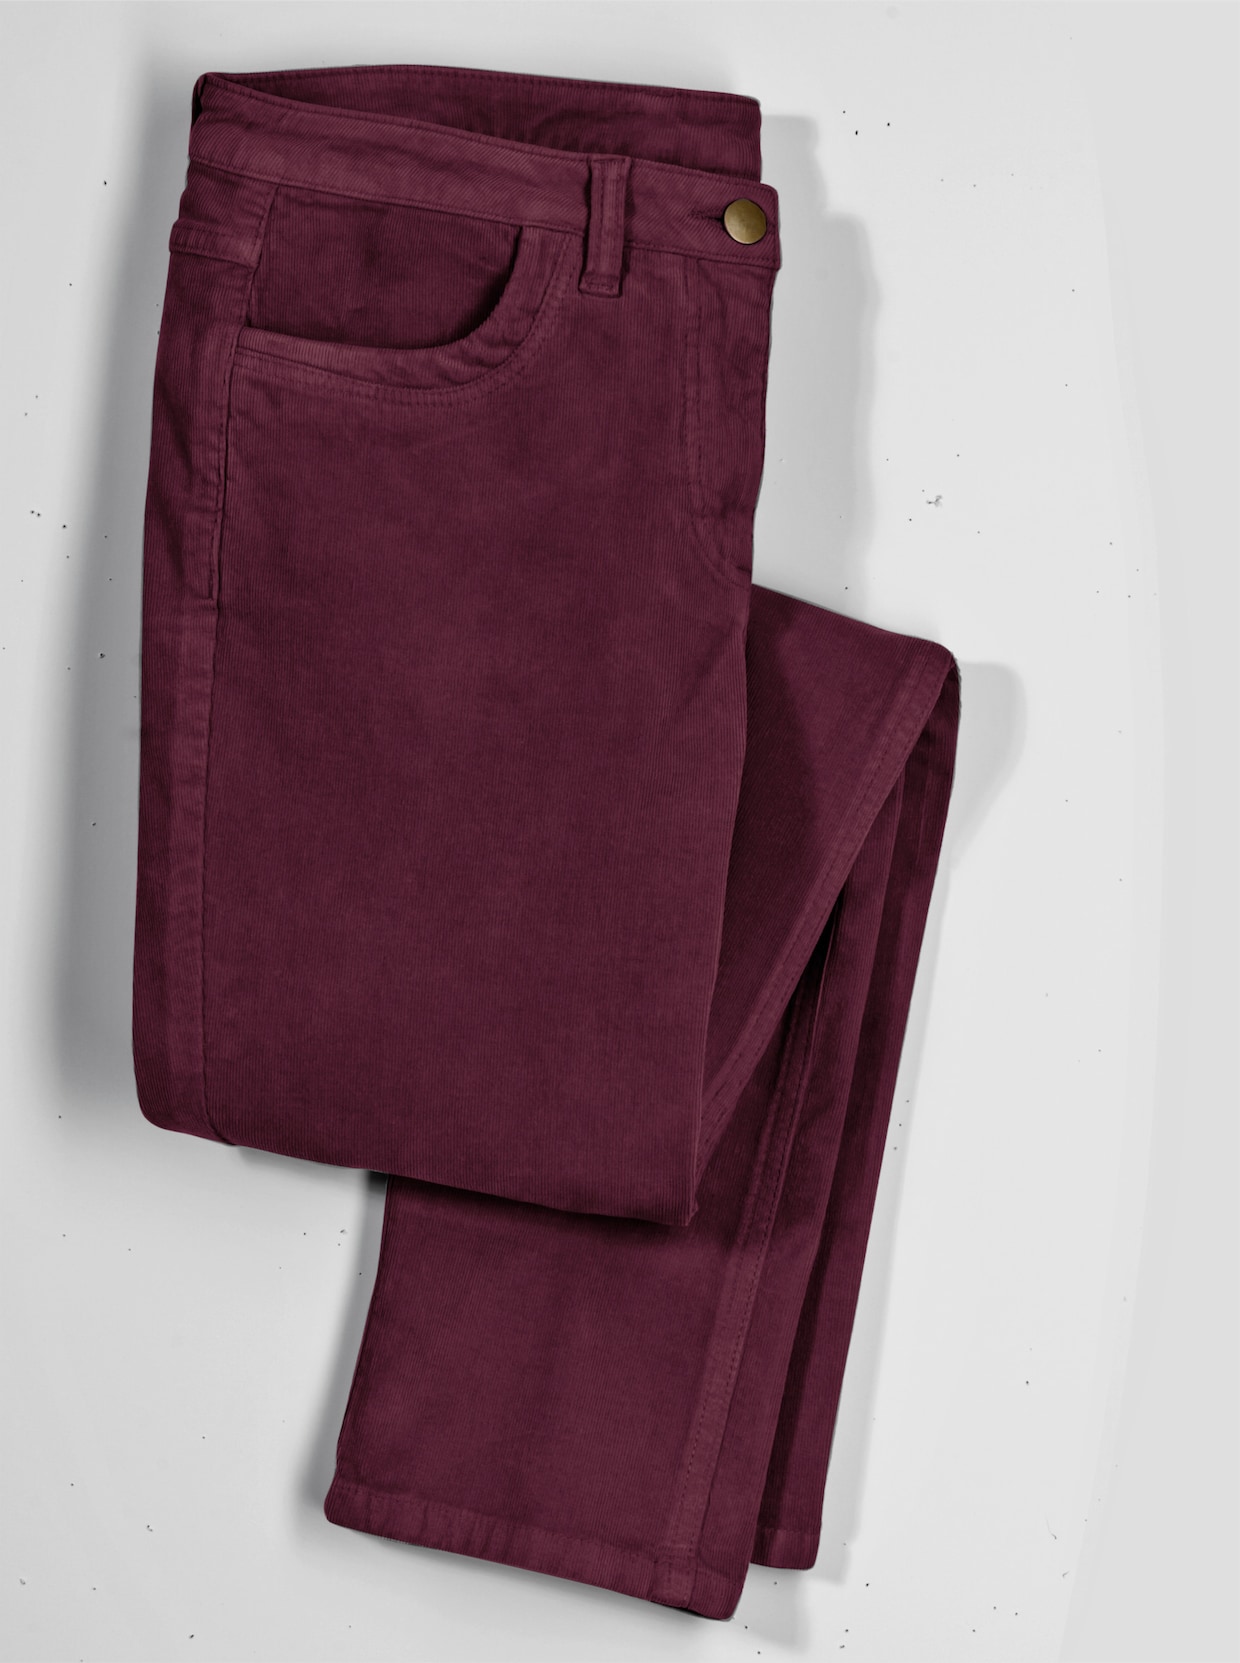 Kordové kalhoty - burgundská